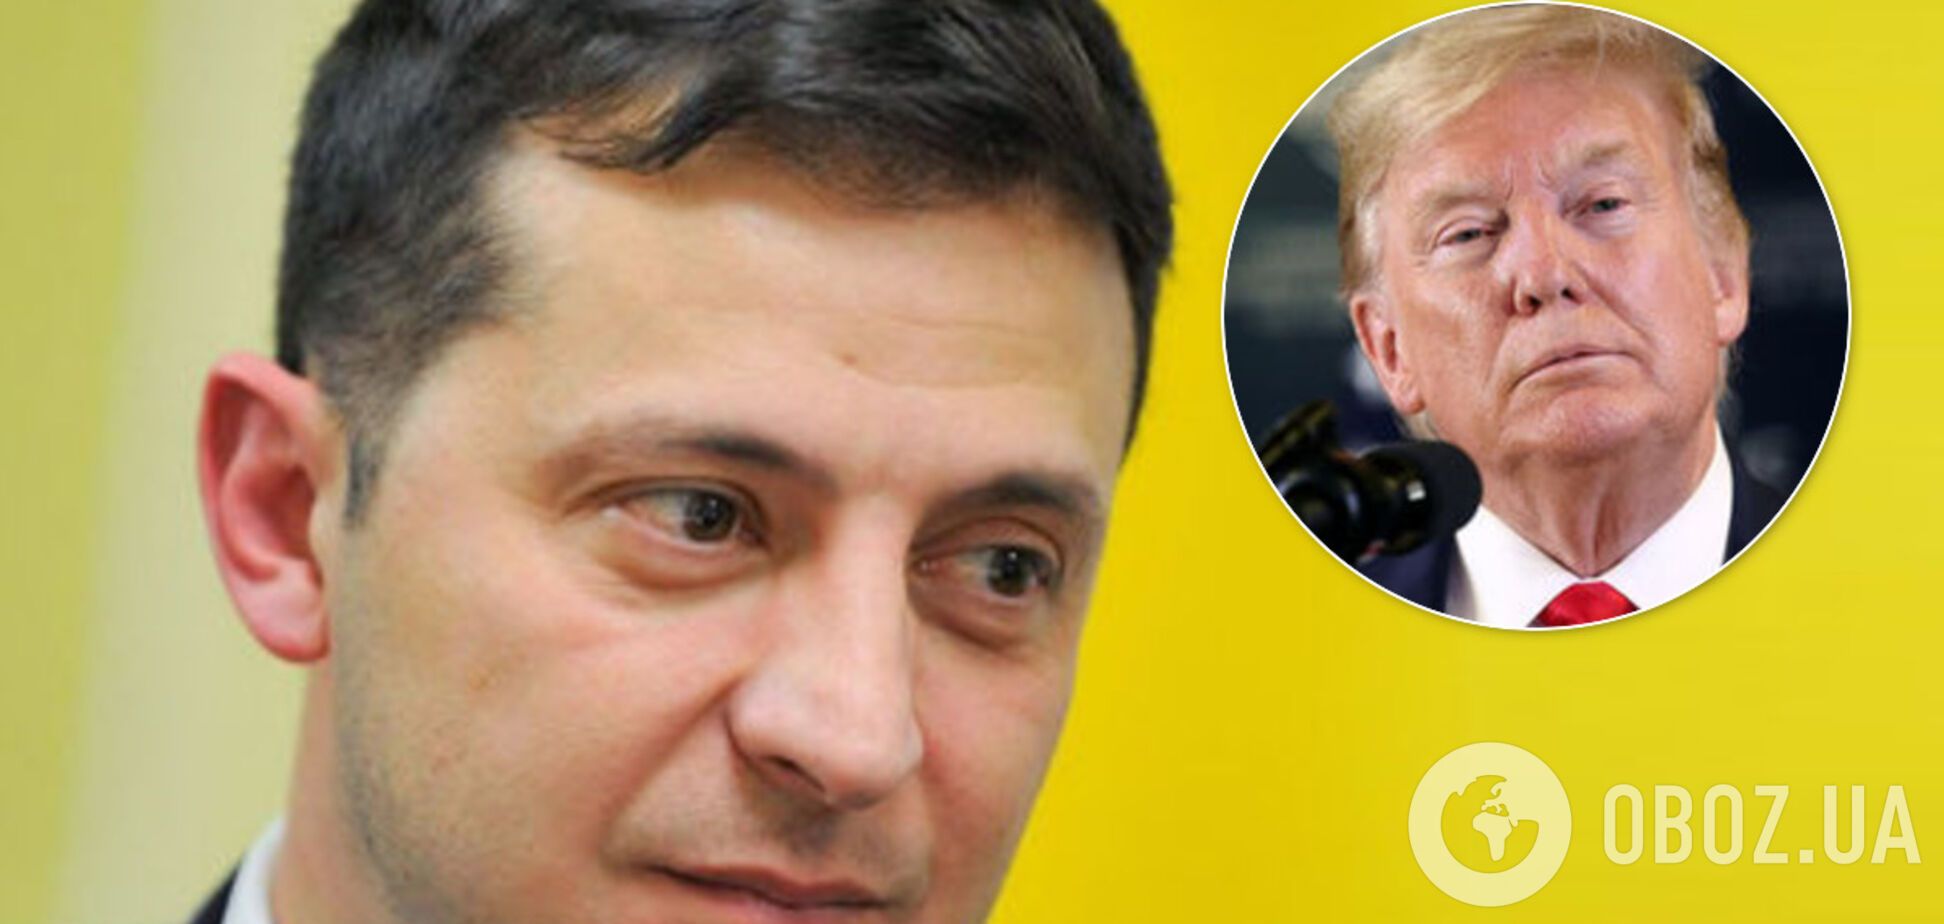 Зеленский заявил, что его предвыборная кампания была лучше, чем у Трампа